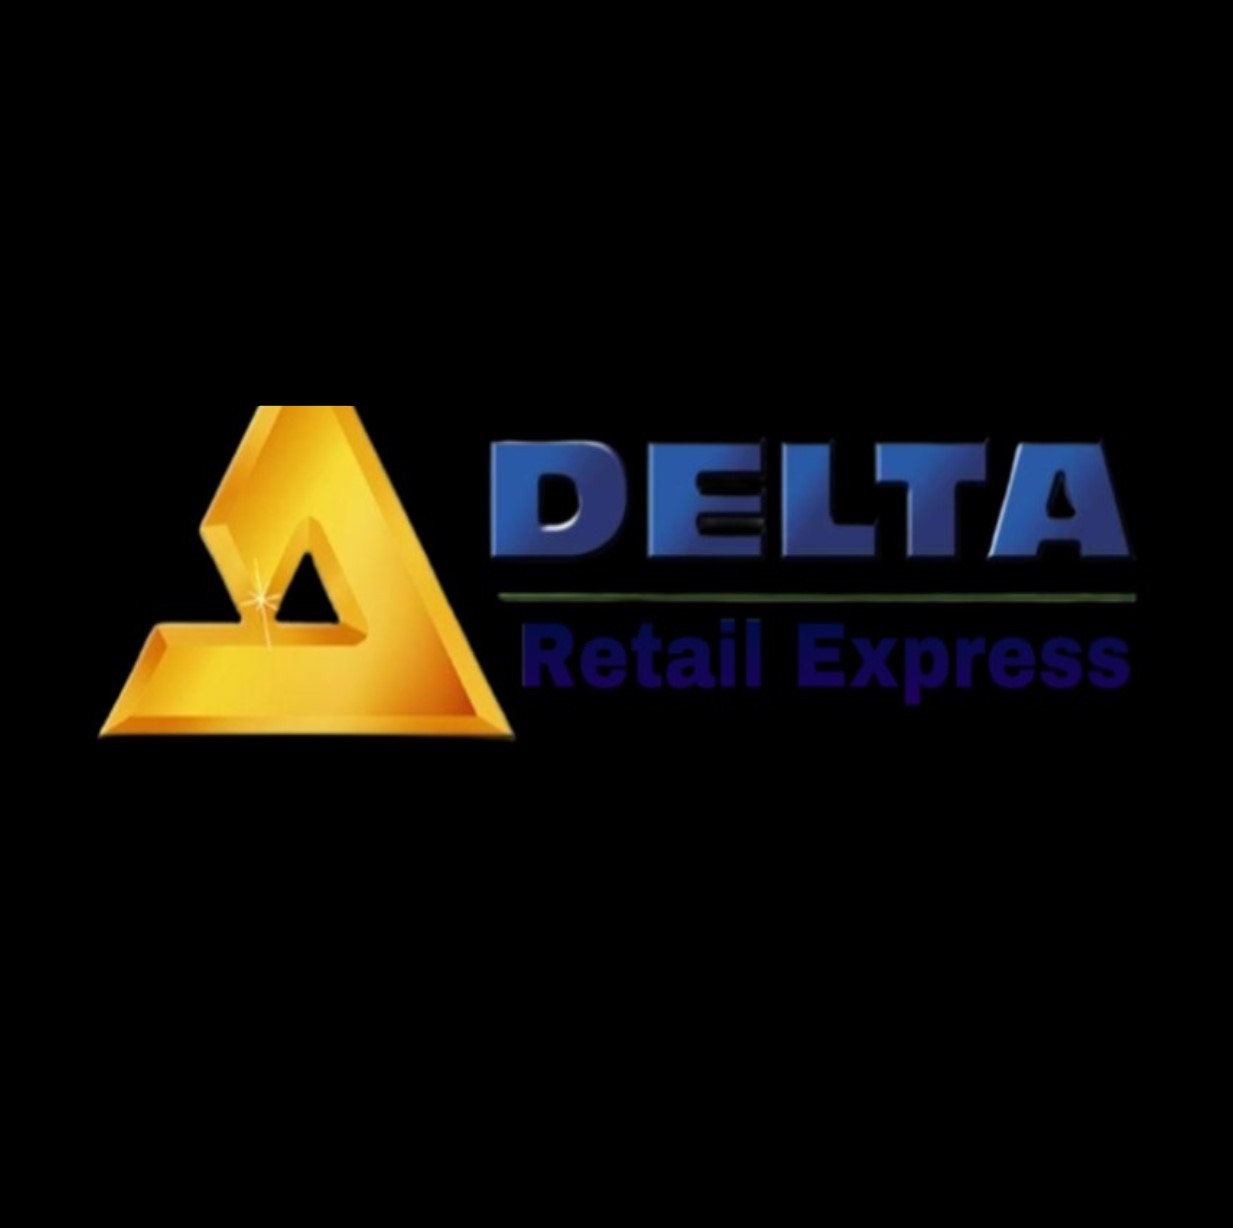 Delta RS Company